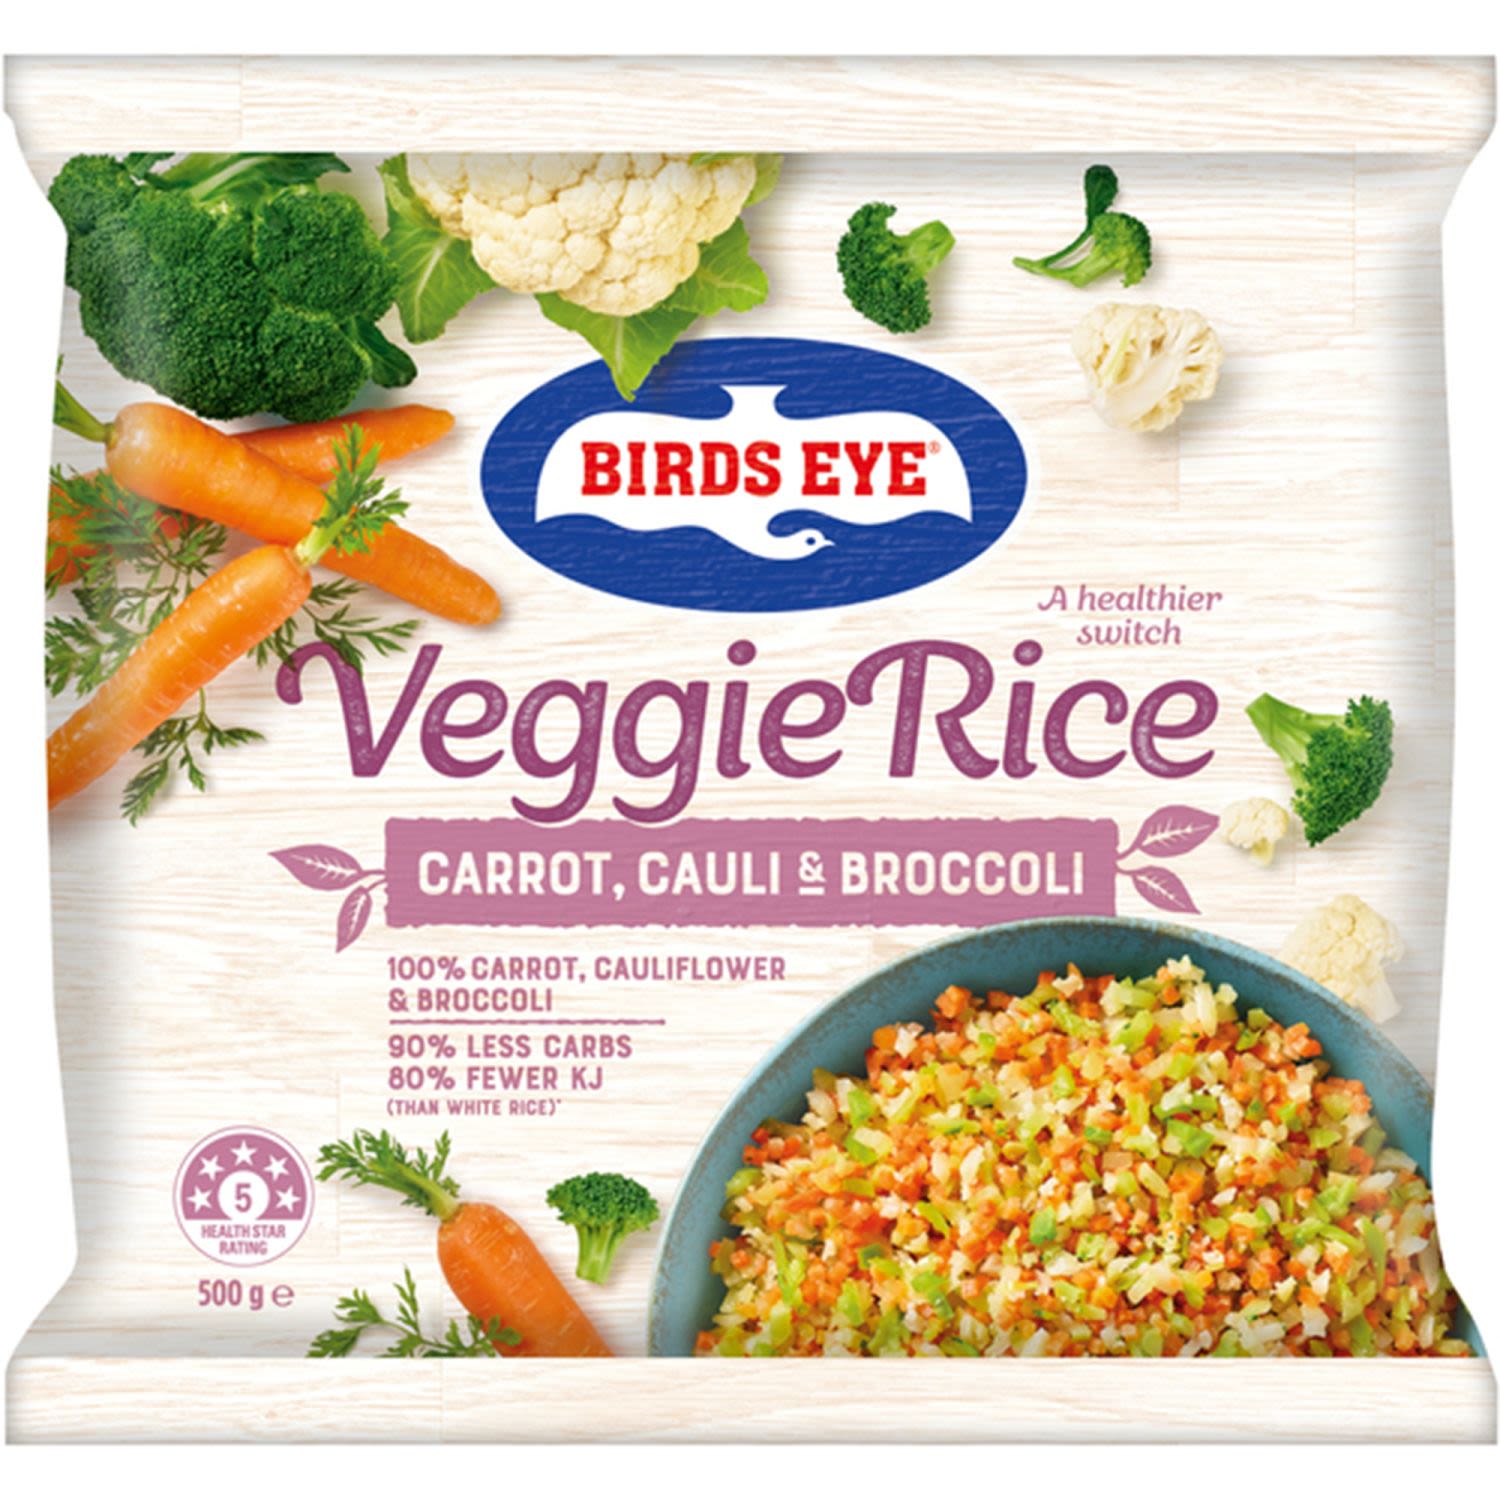 Birds Eye Veggie Rice Carrot, Cauli & Broccoli, 500 Gram